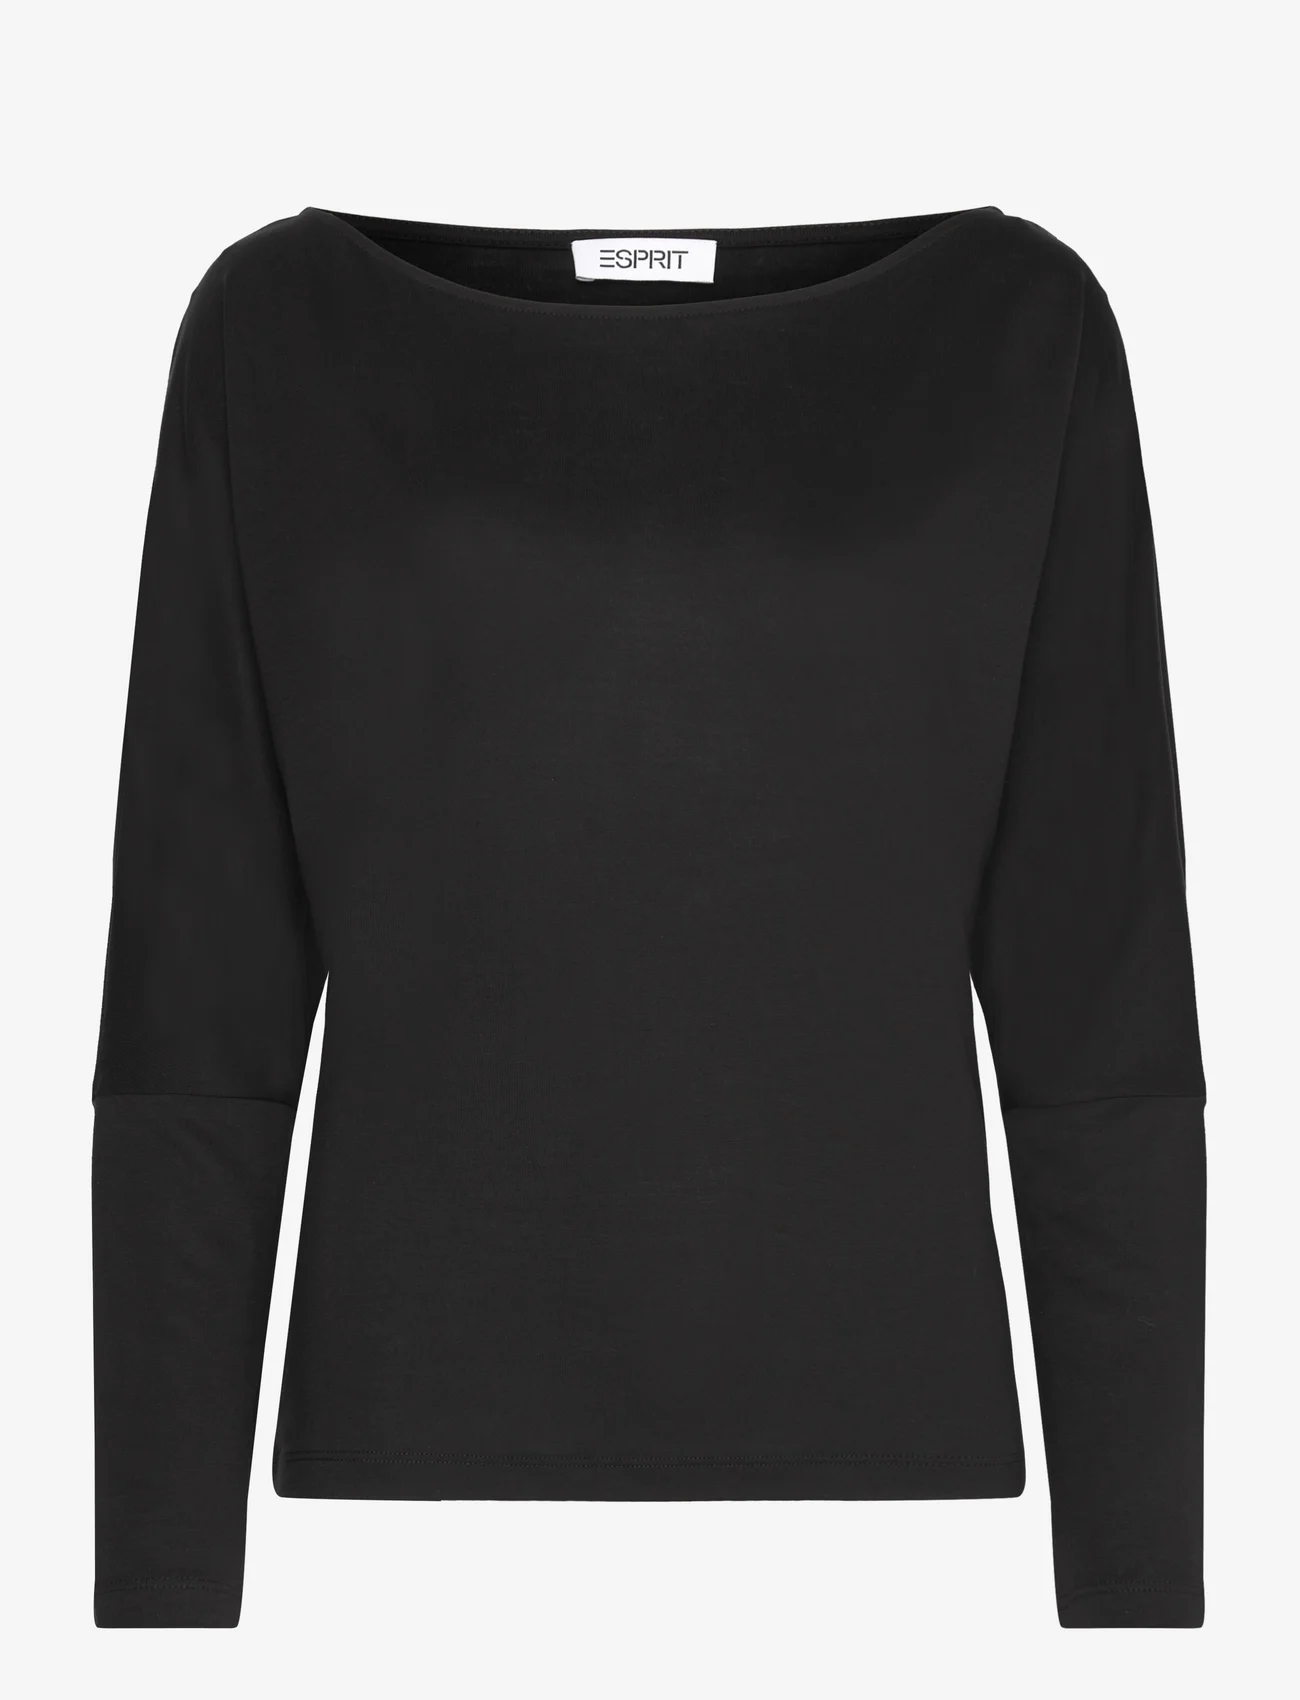 Esprit Casual - T-Shirts - tops met lange mouwen - black - 0